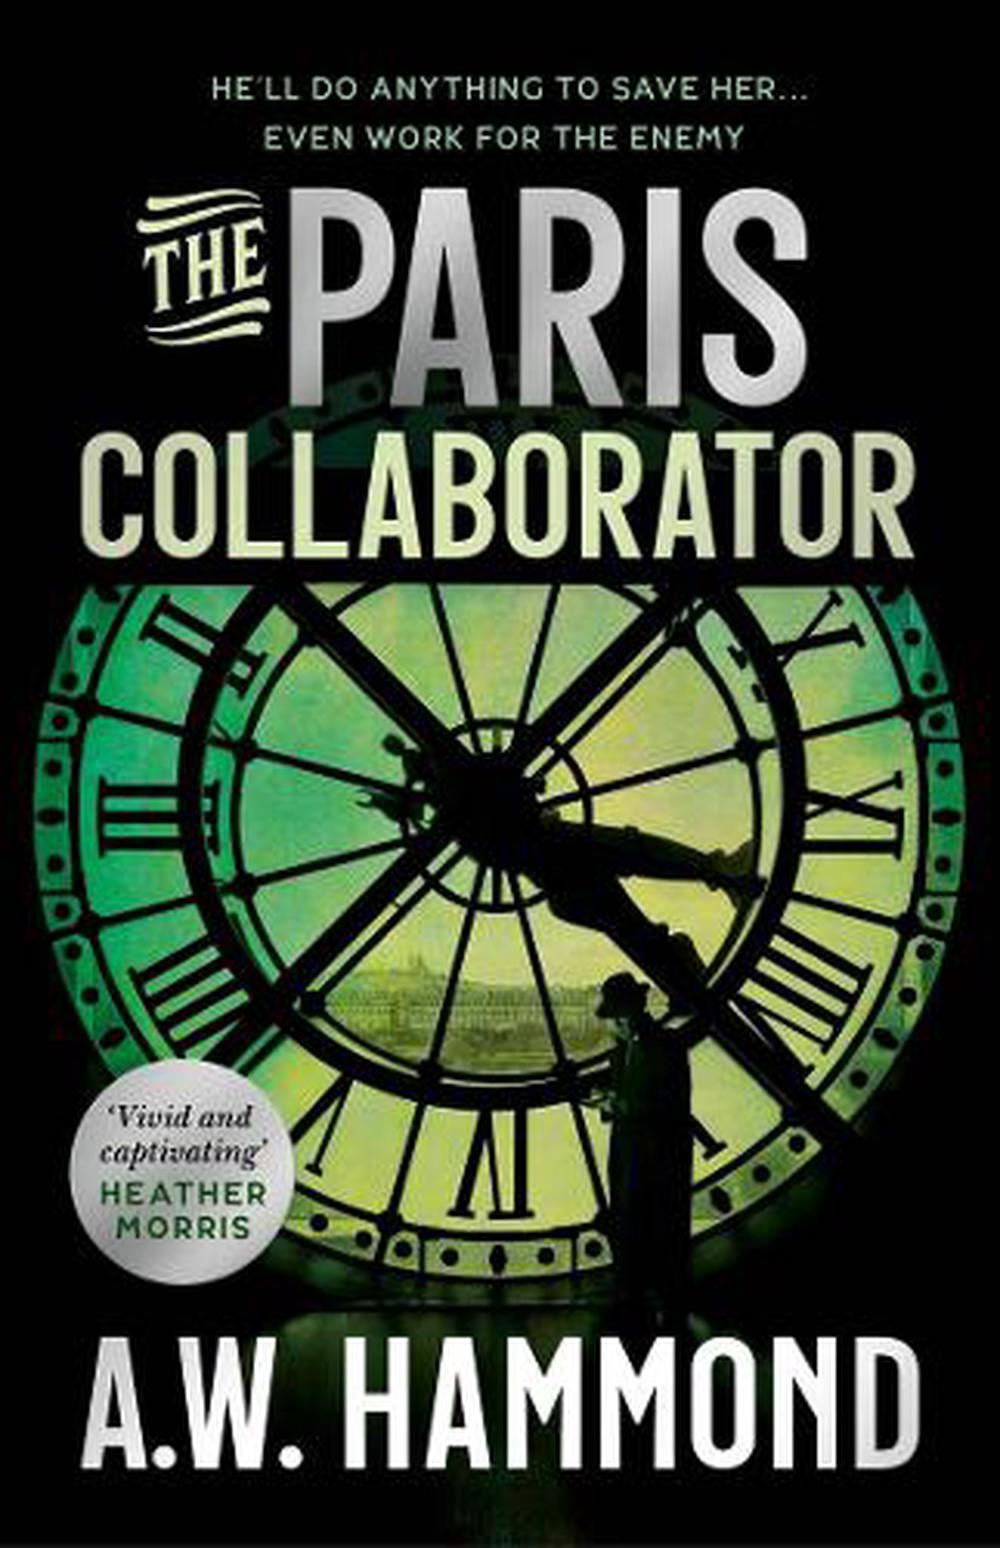 The Paris Collaborator